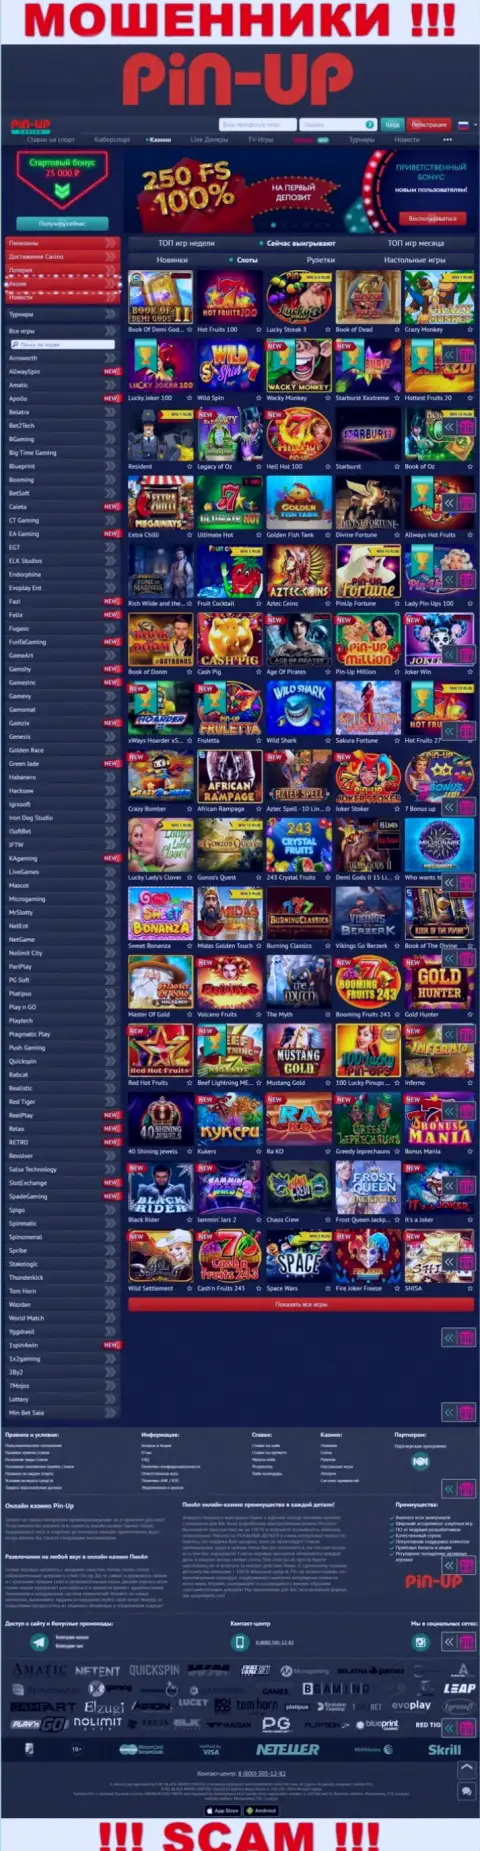 Пин-Ап Казино - это официальный сайт махинаторов Pin-Up Casino